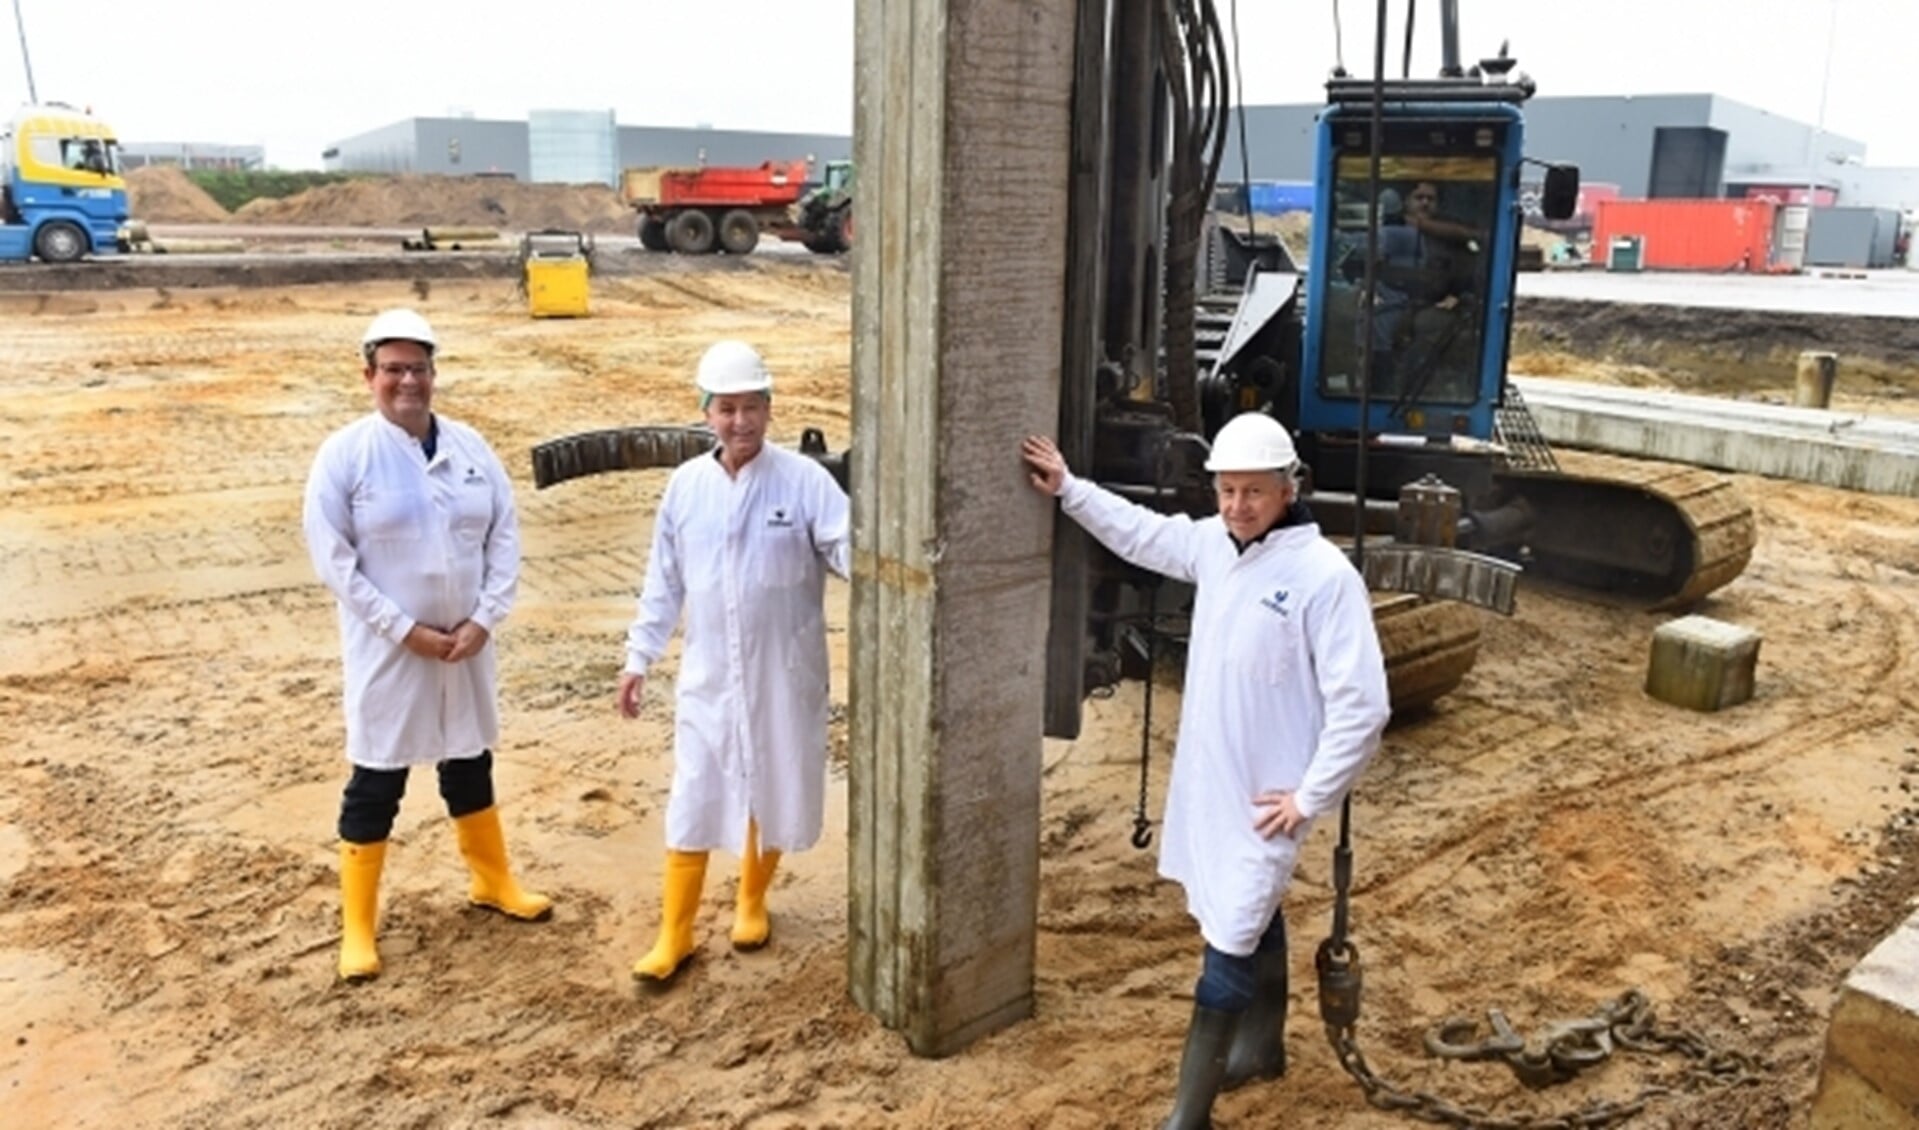 Vlnr Jacco Remijn, Jan Legters en Edward Windhorst bij eerste paal nieuwbouw Esbro